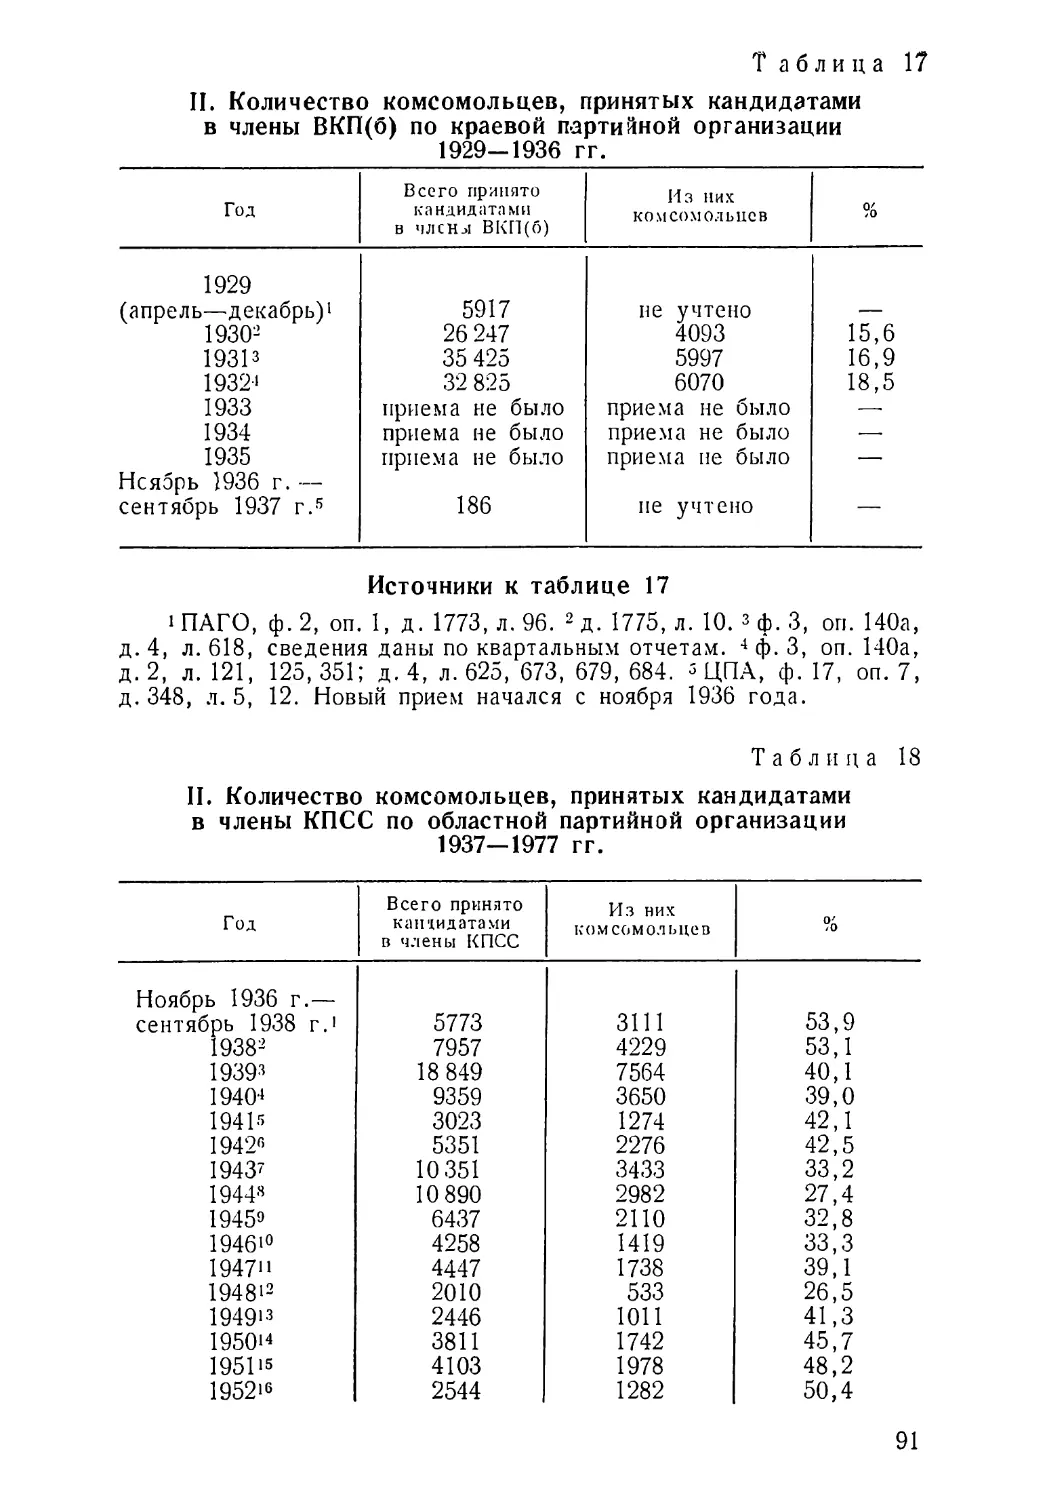 1929—1936 гг. Таблица 17
1938—1978 гг. Таблица 18